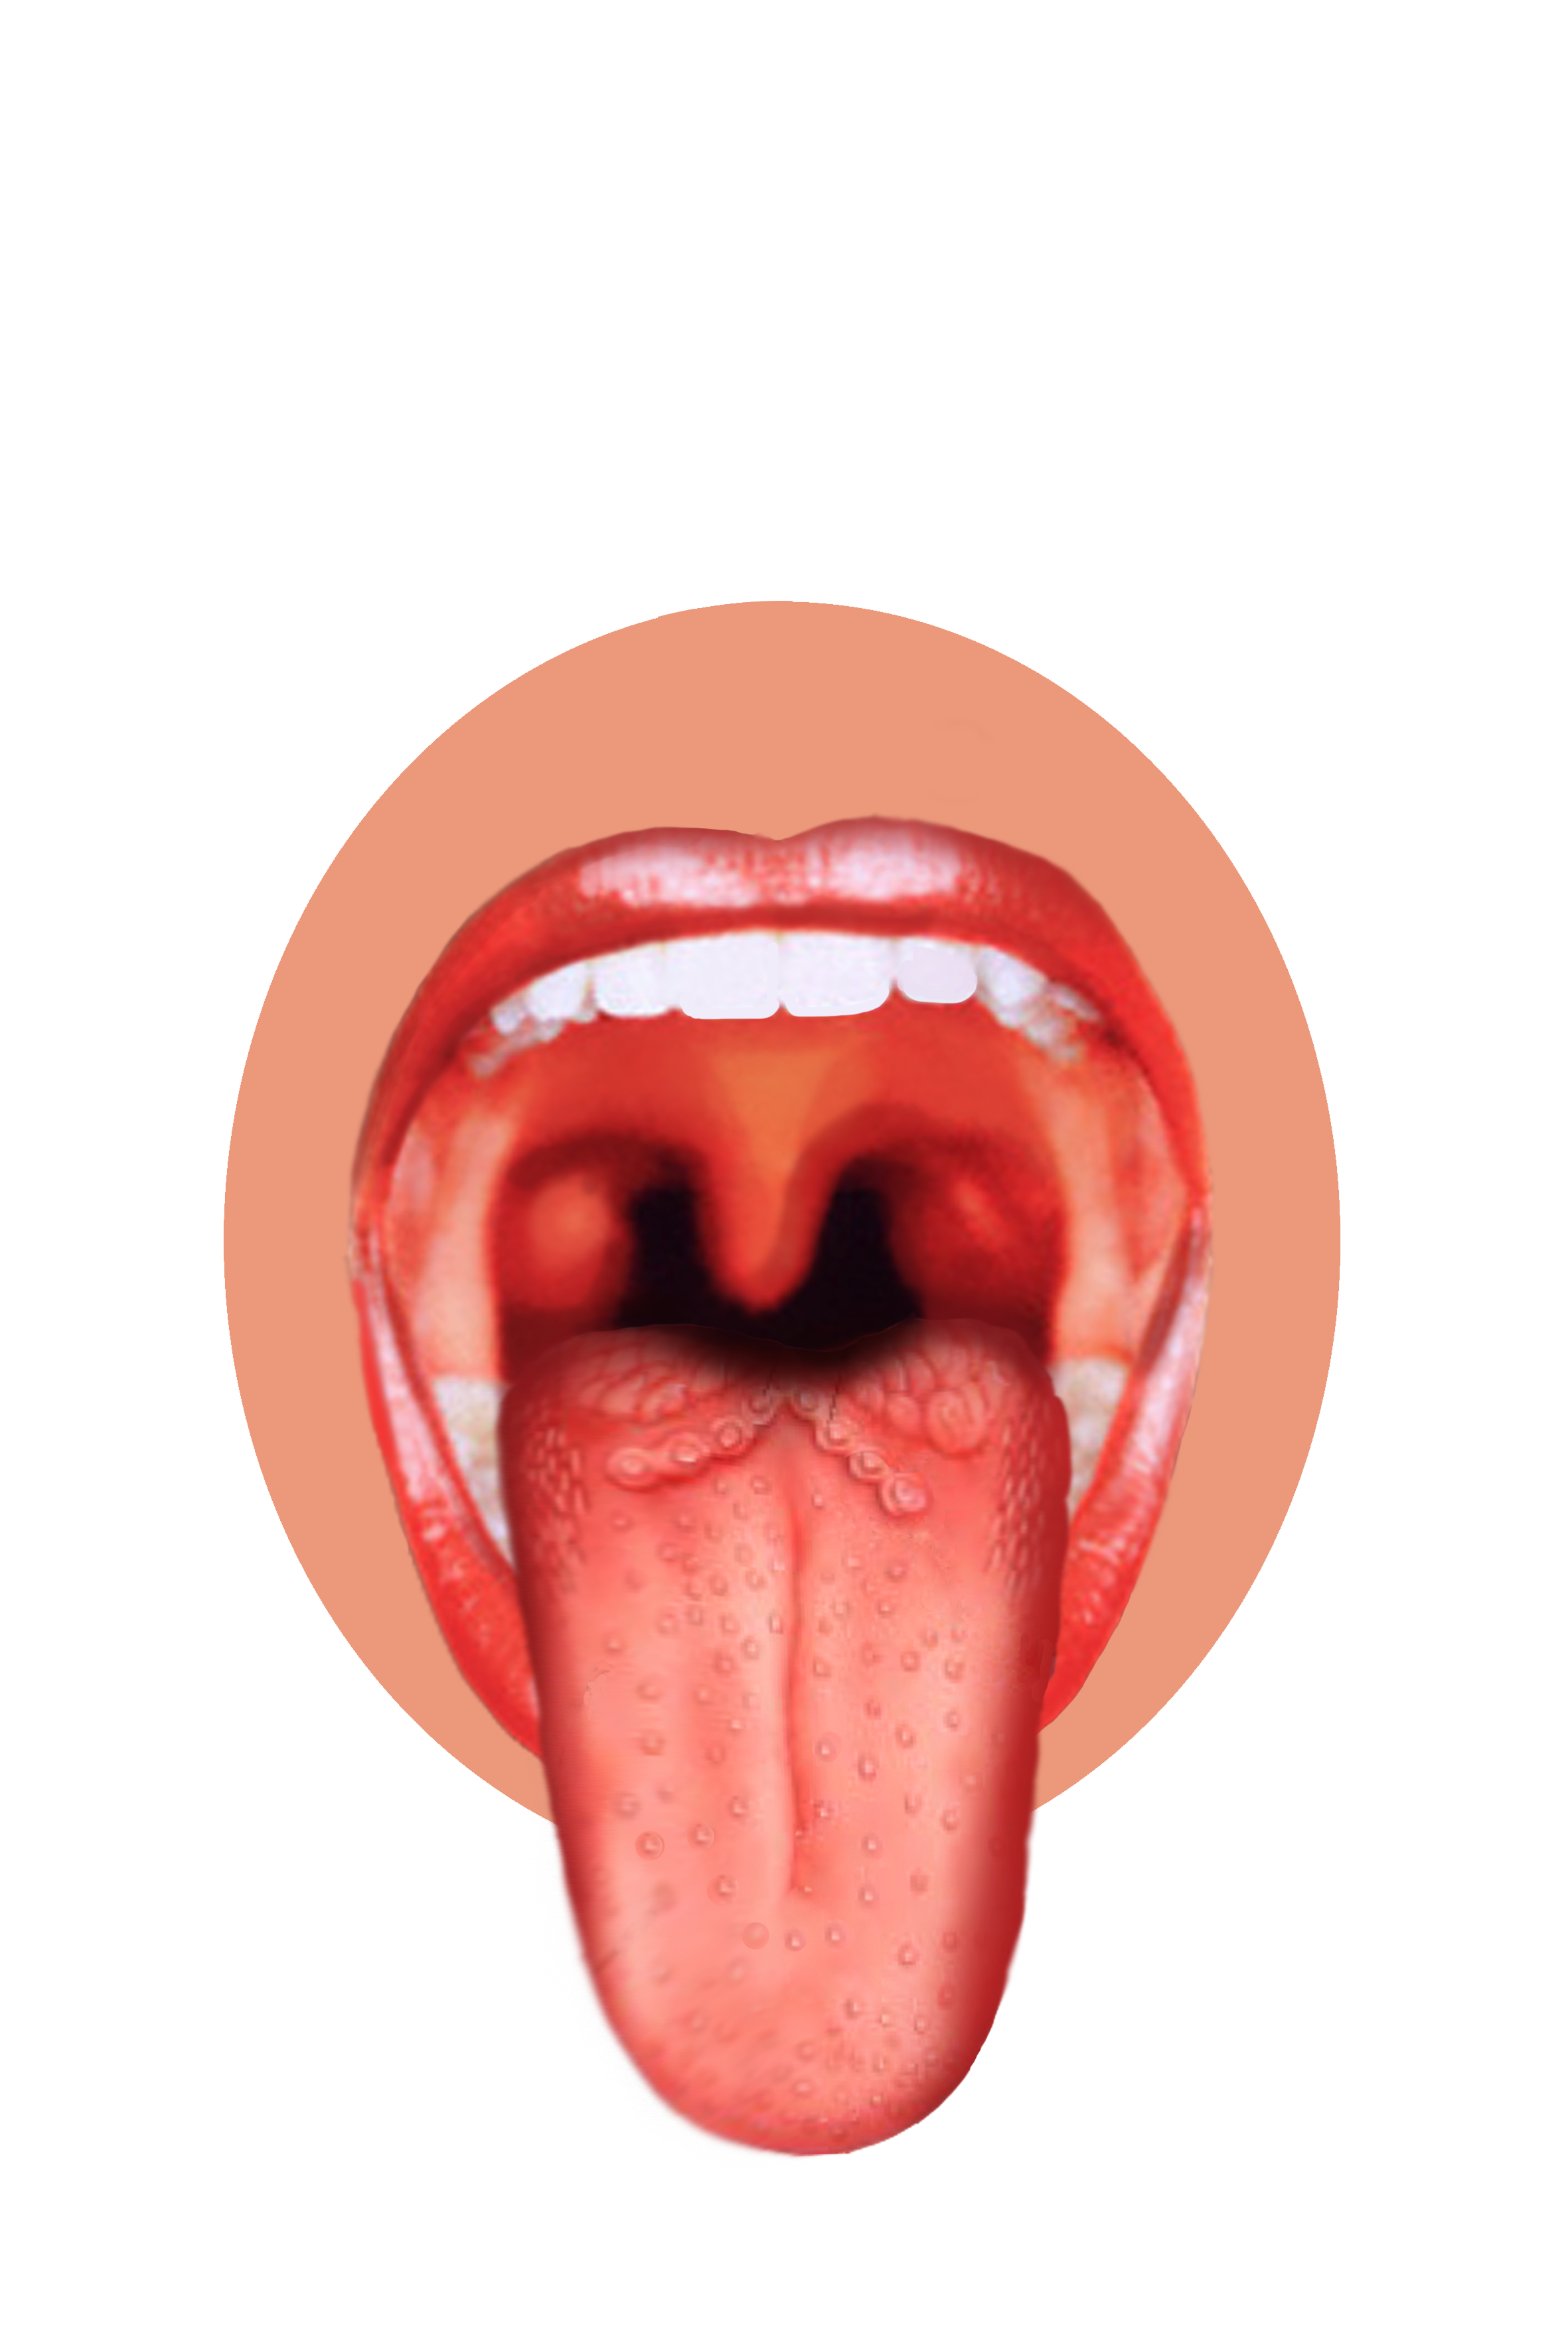 Funny Tongue Cartoon Free HD Image PNG Image